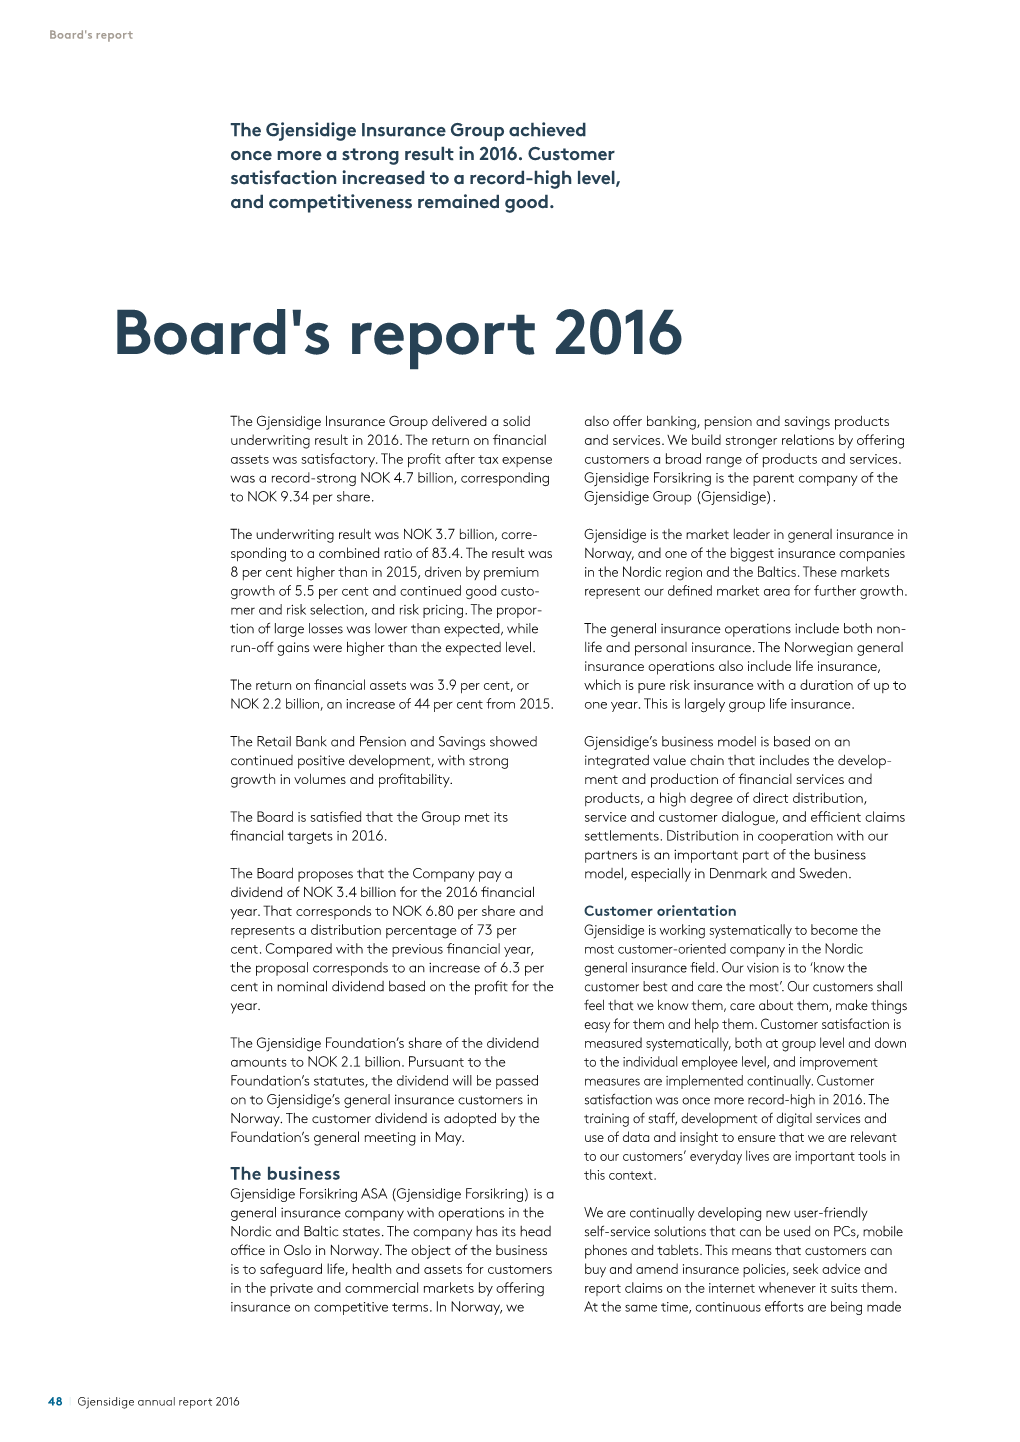 Board's Report 2016